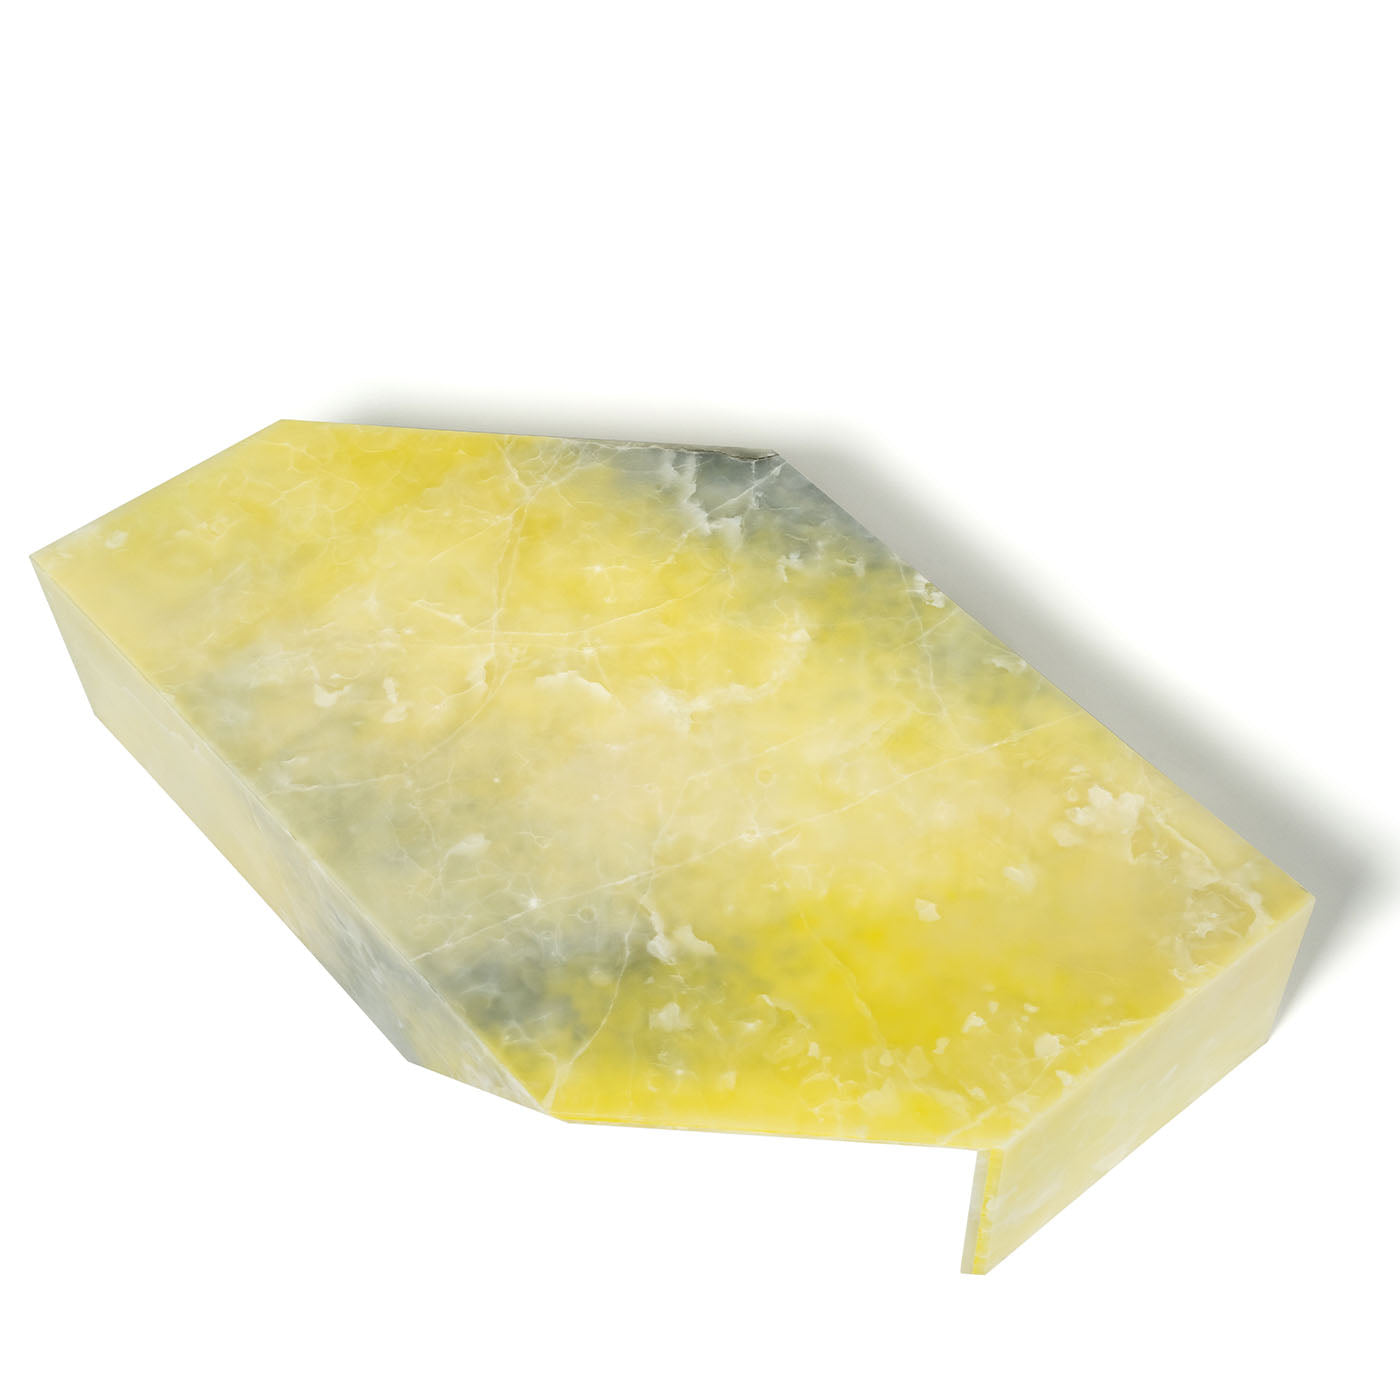 Table basse Origami Mimosa de Patricia Urquiola - Vue alternative 2